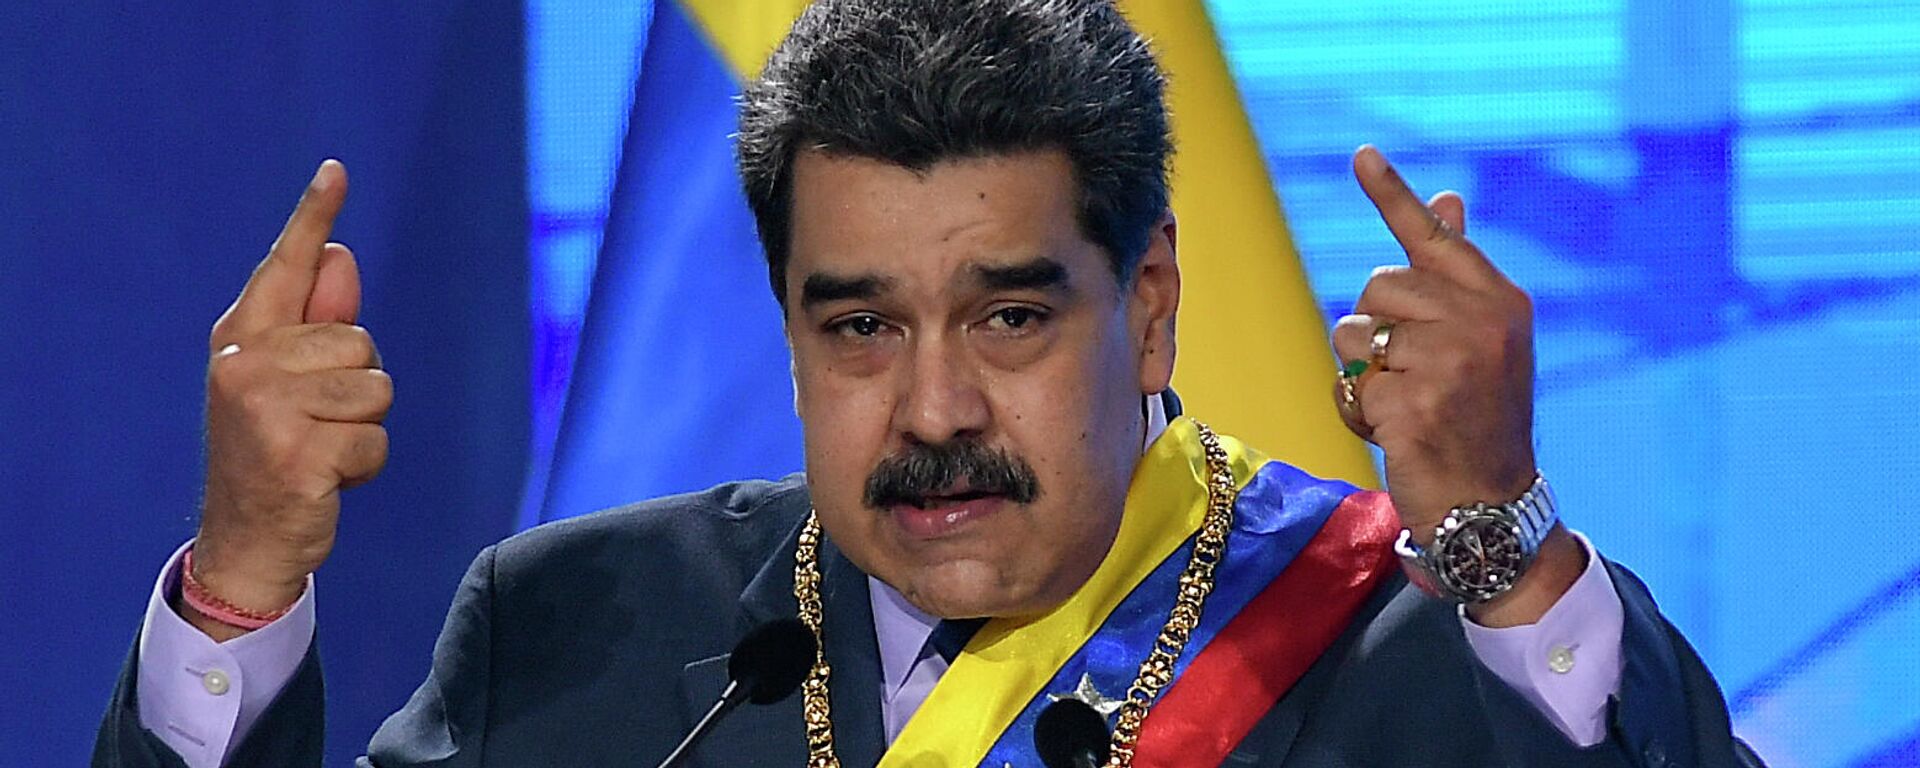 Nicolás Maduro, presidente de Venezuela - Sputnik Mundo, 1920, 30.04.2021